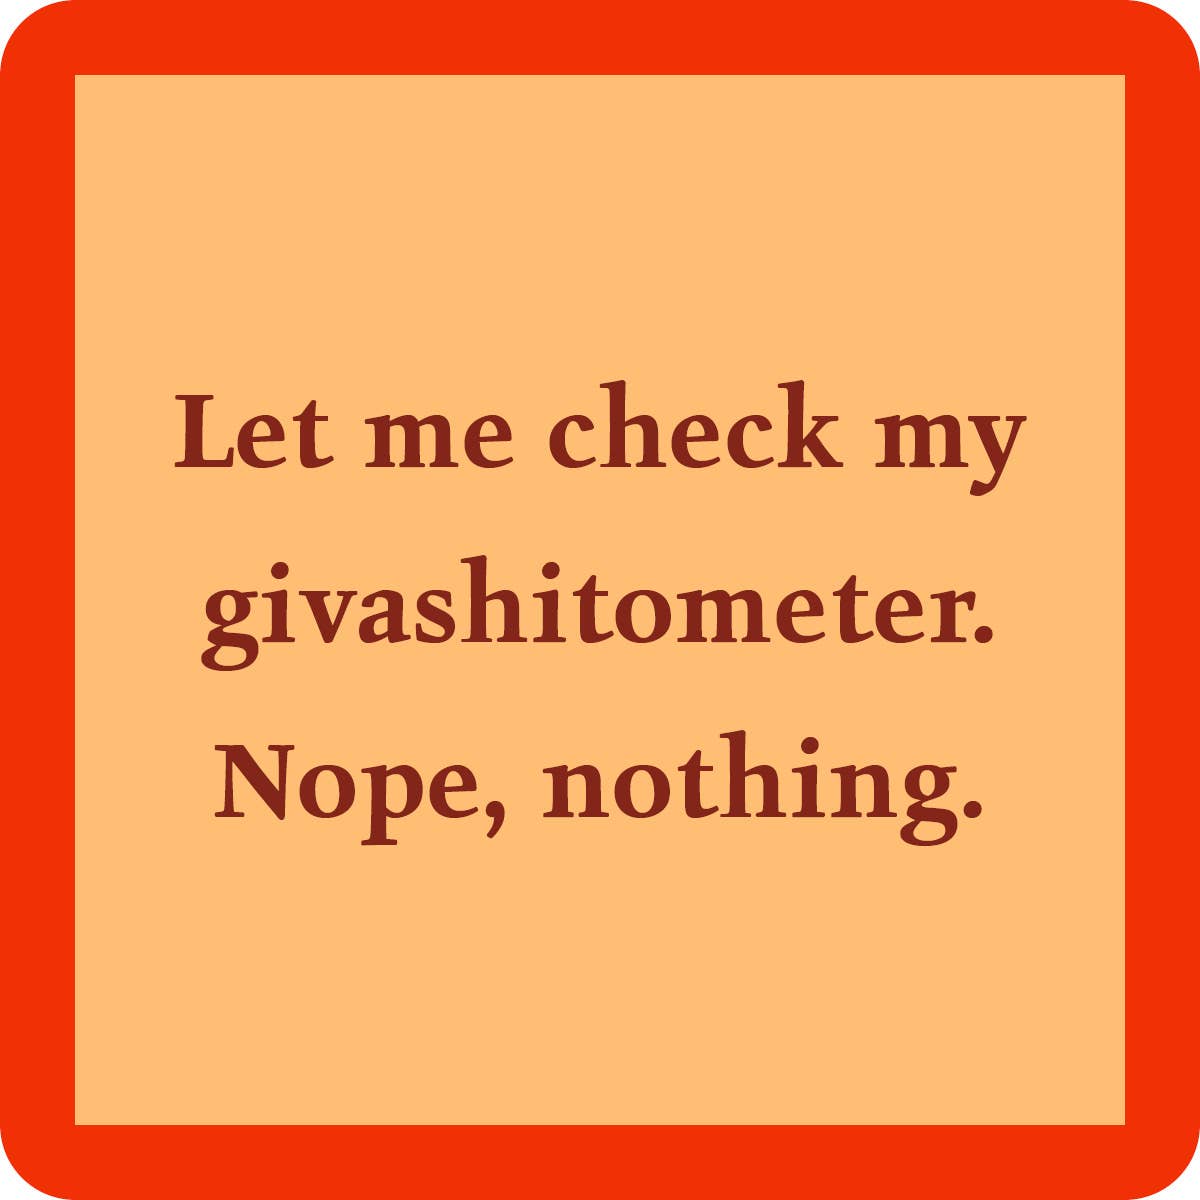 COASTER: Giveashitometer